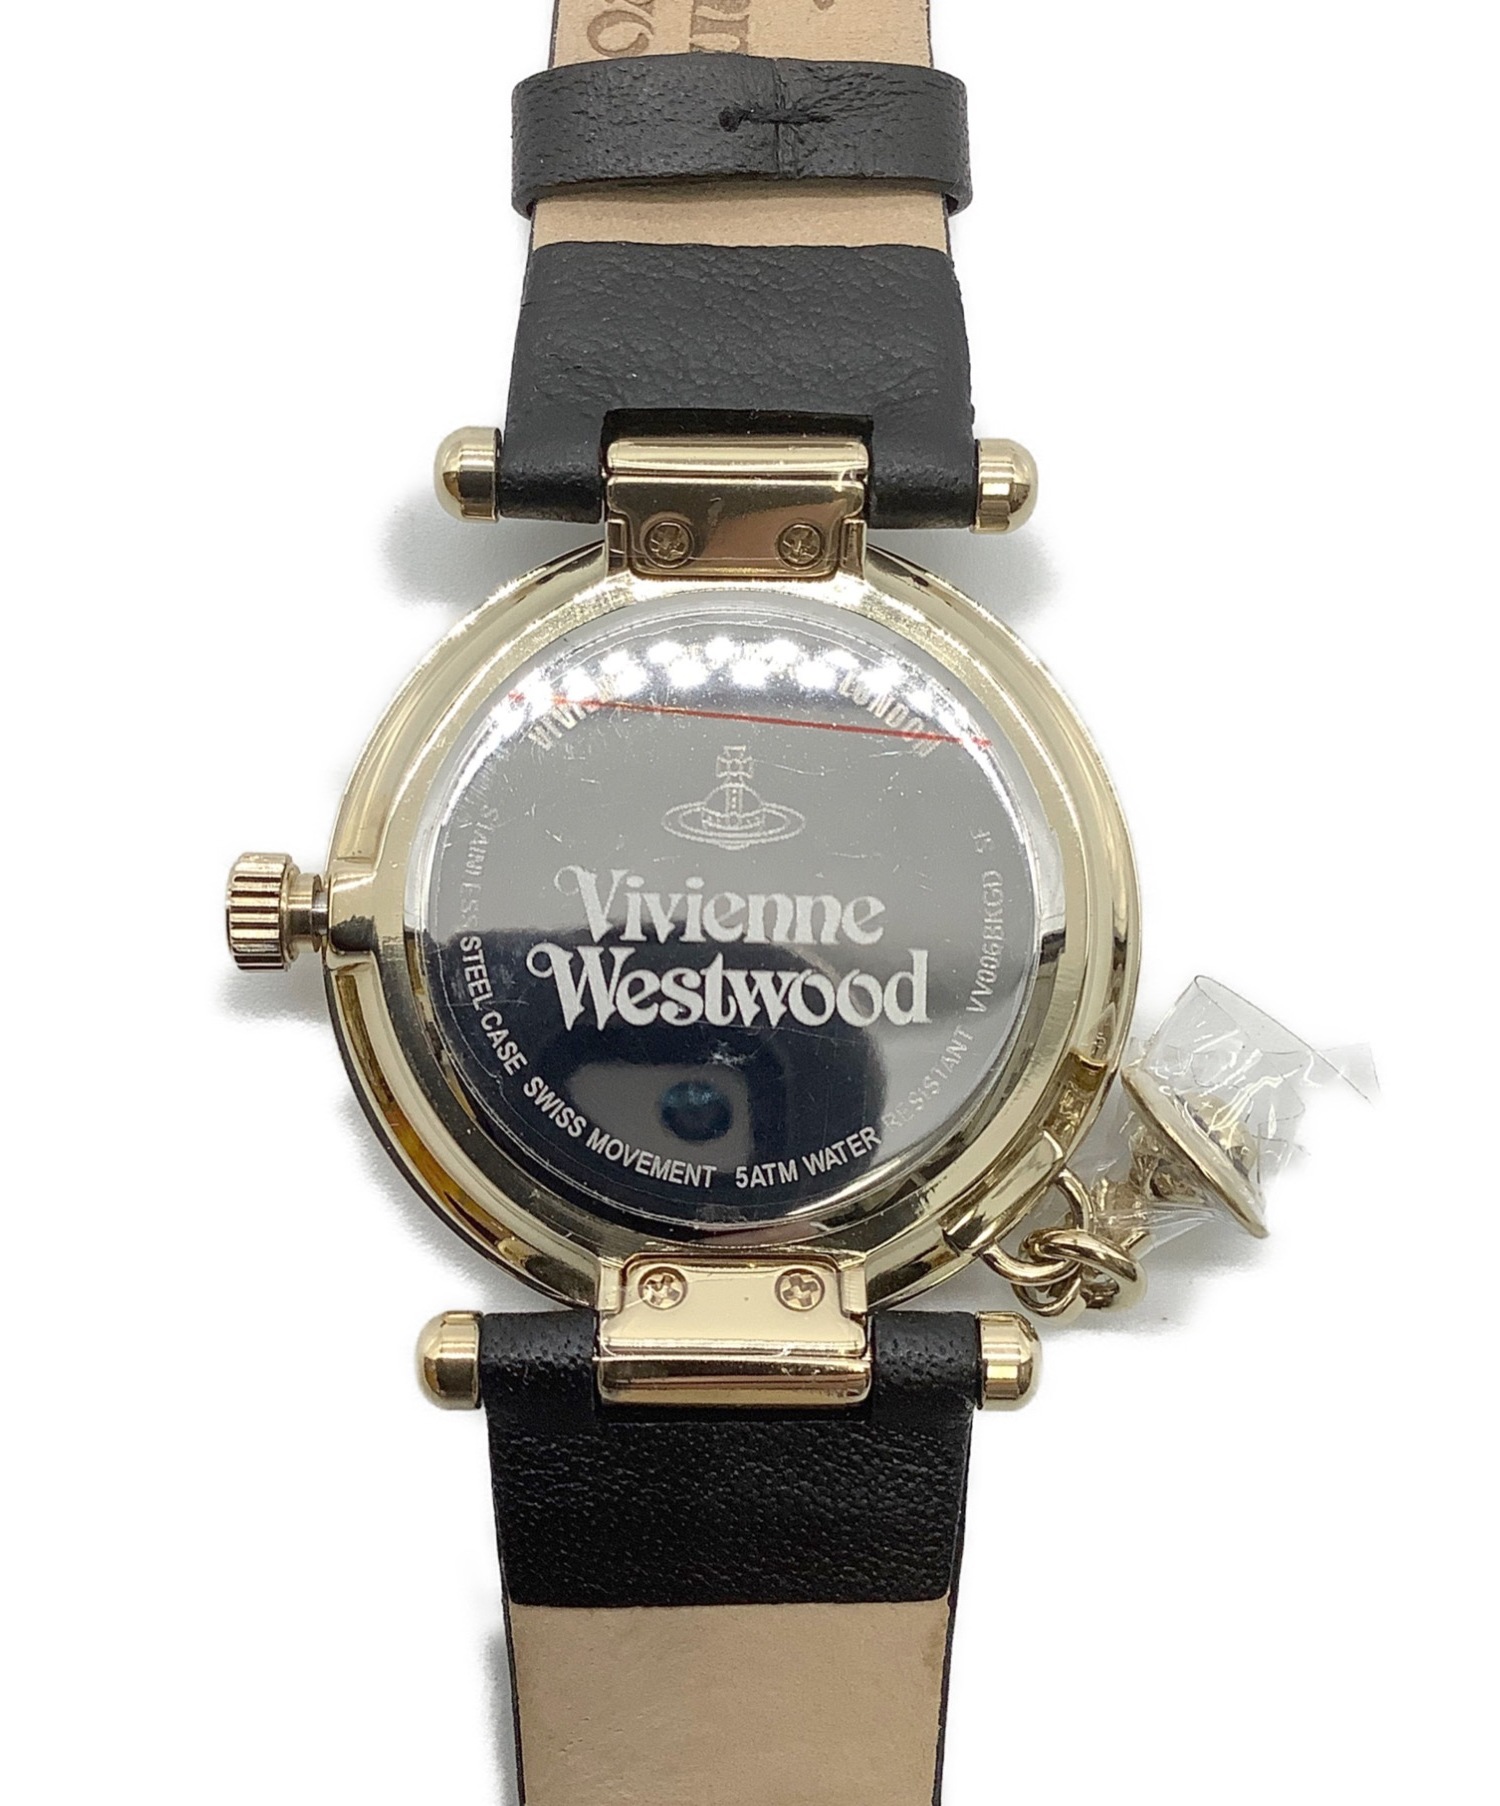 Vivienne Westwood (ヴィヴィアンウエストウッド) 腕時計 未使用品 VV006BKGD